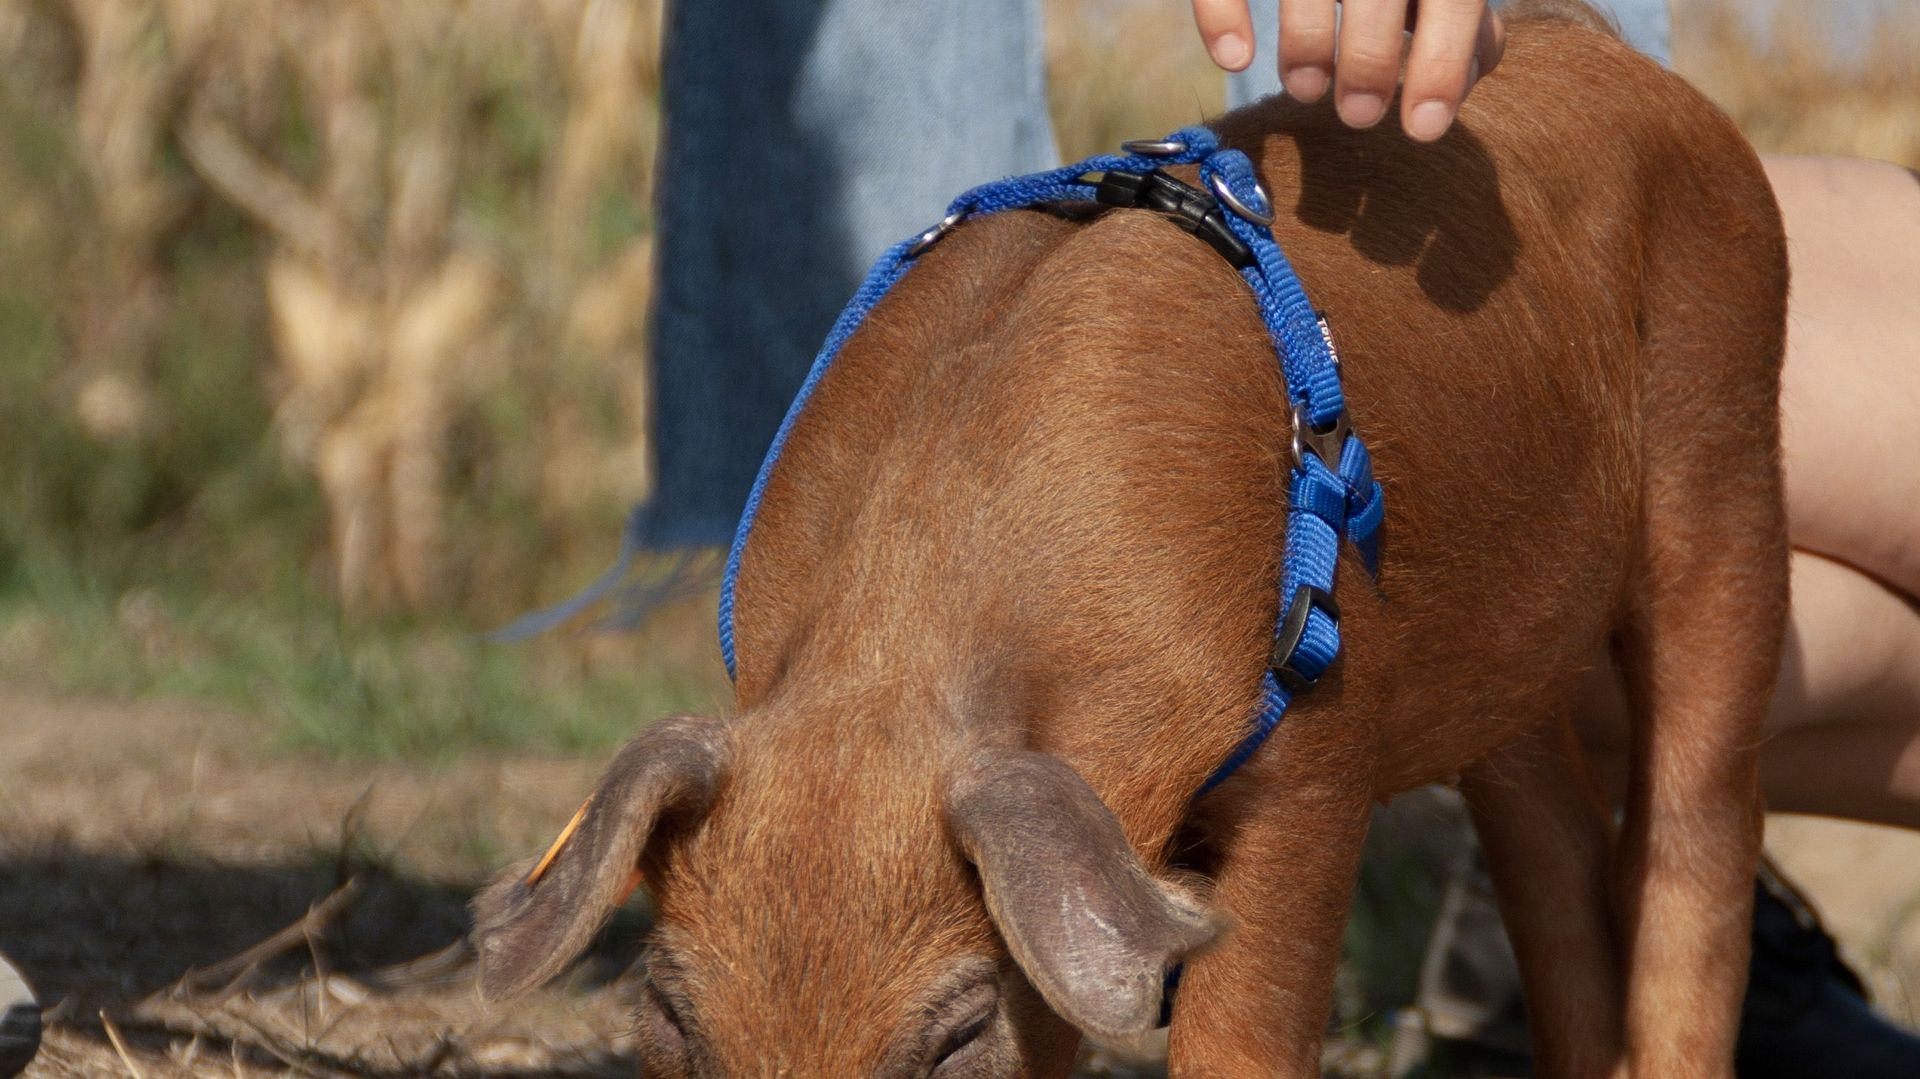 Barback, le petit cochon rescapé par une influenceuse, a rejoint un sanctuaire pour animaux 